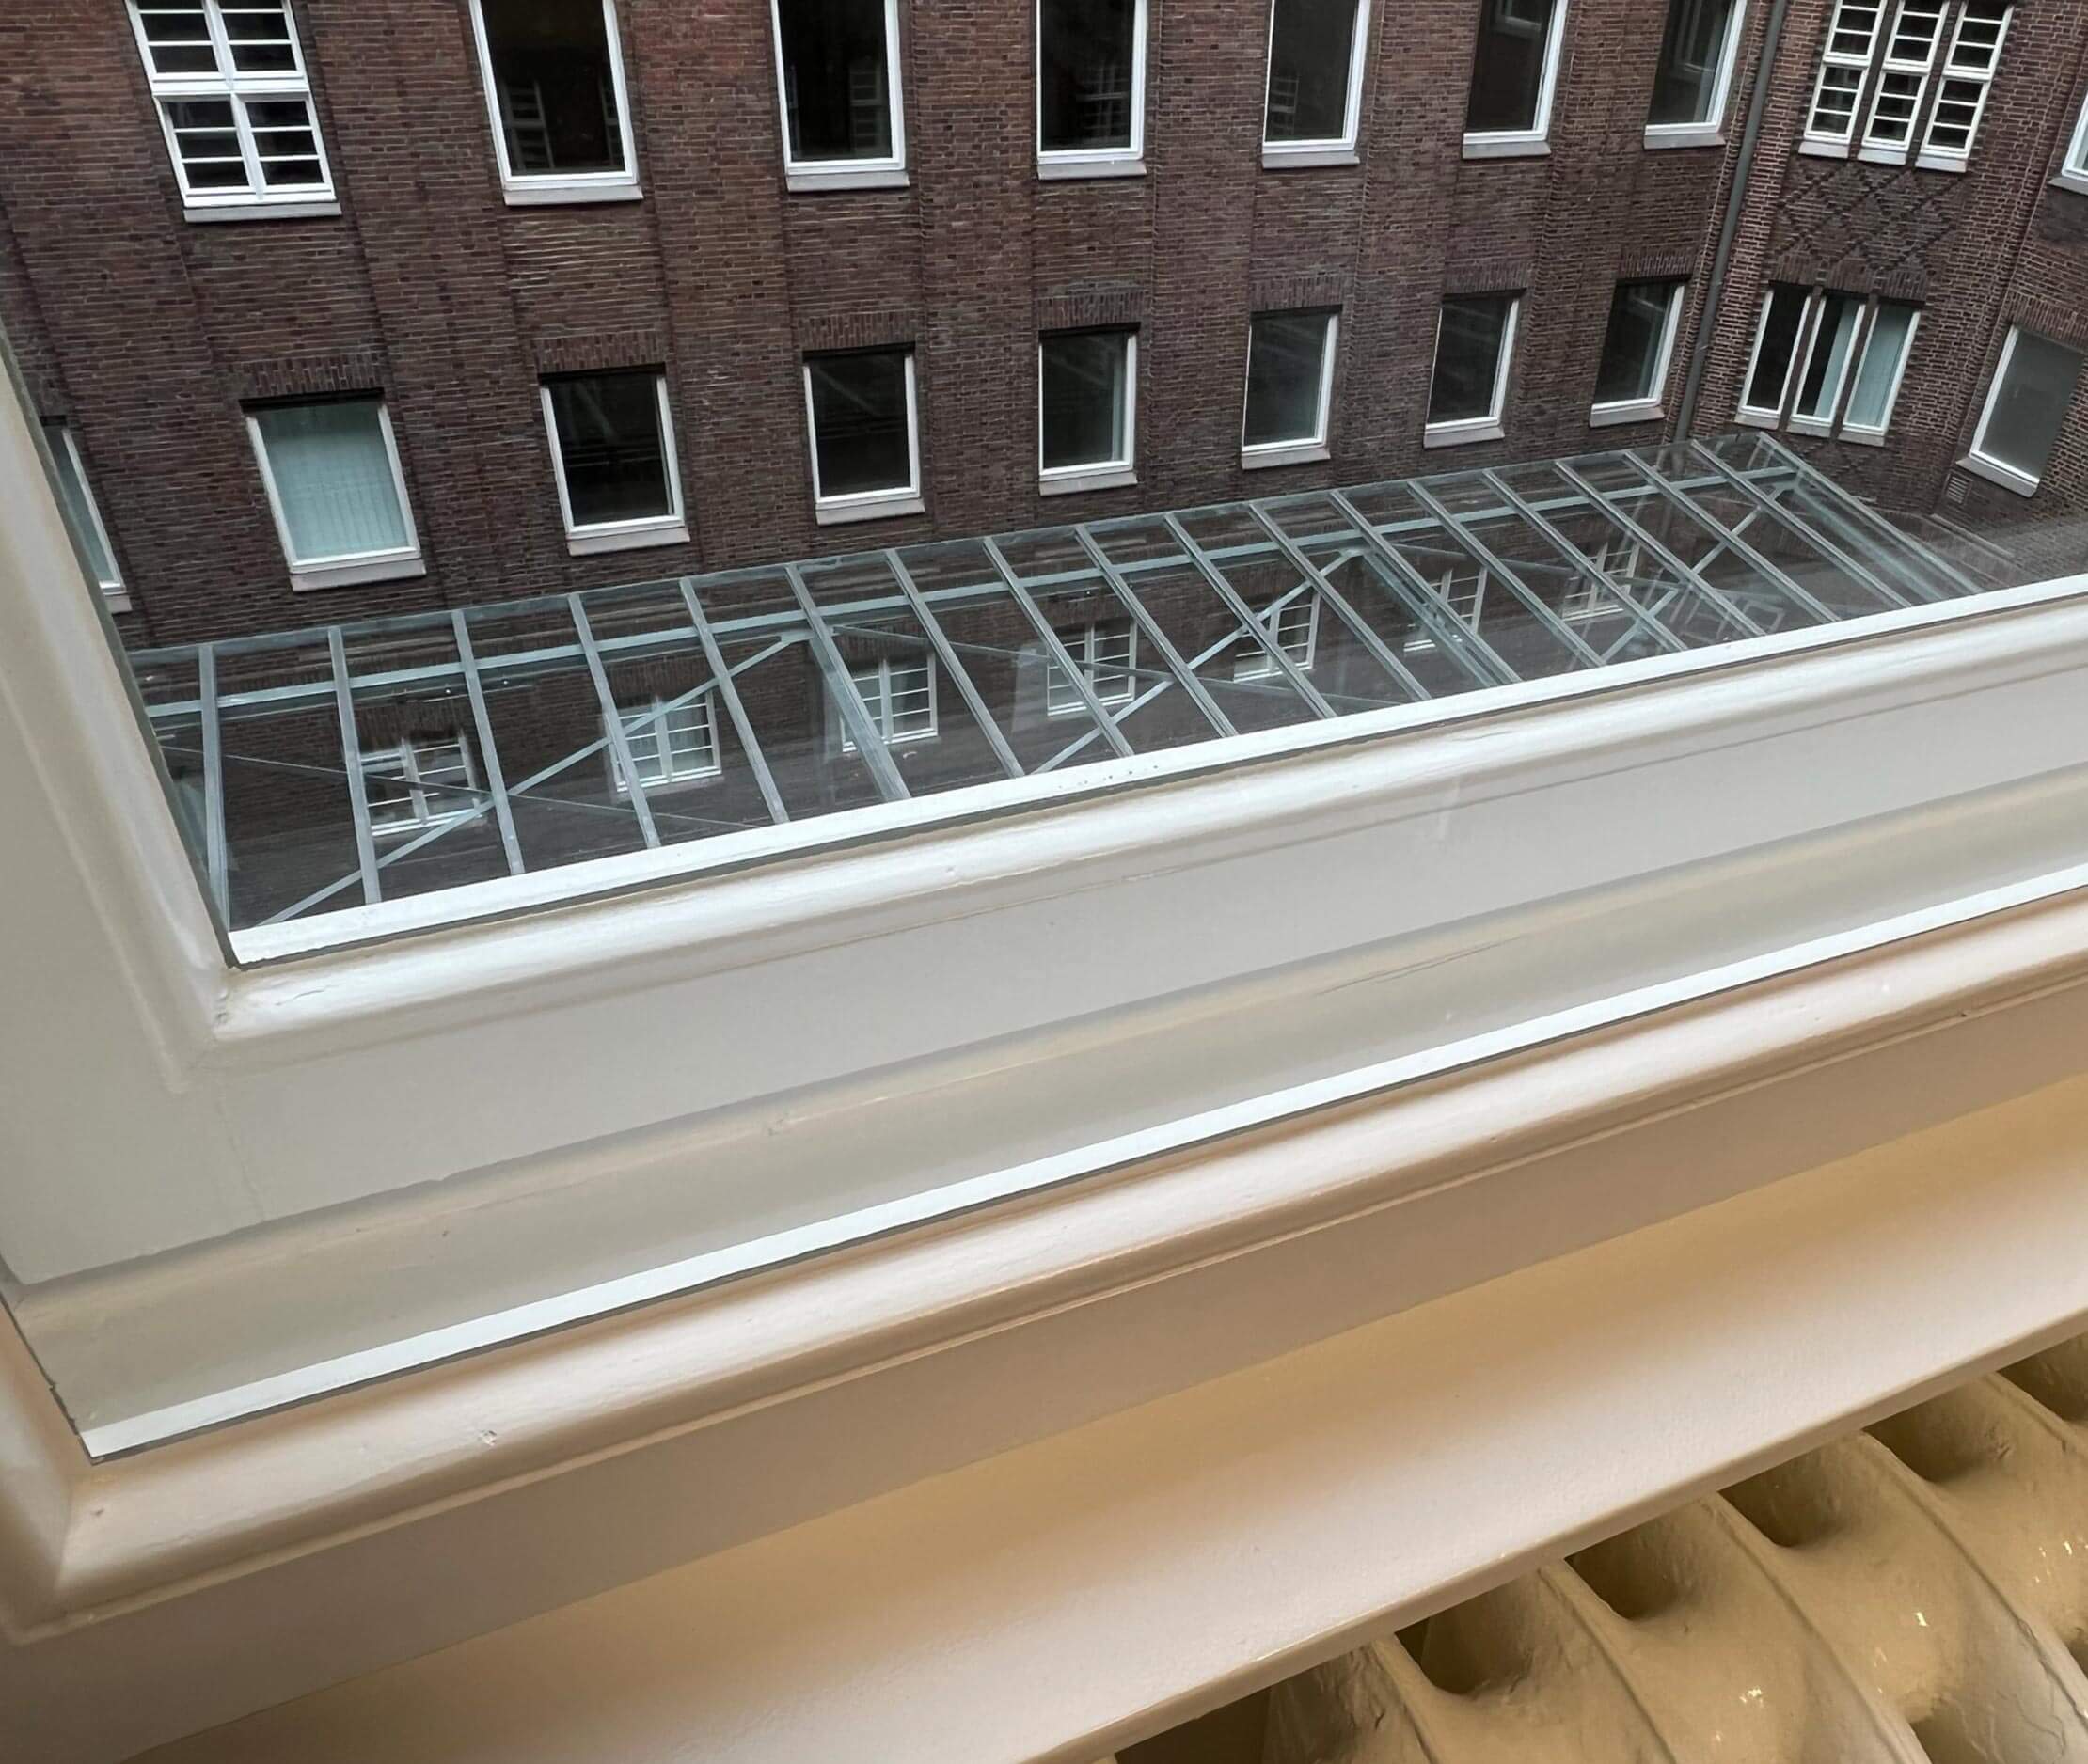 Malerbetrieb Kluge Fenstersanierung Gewerbekunden Referenz Büros in der Ringbahnstraße - Fensterrahmen